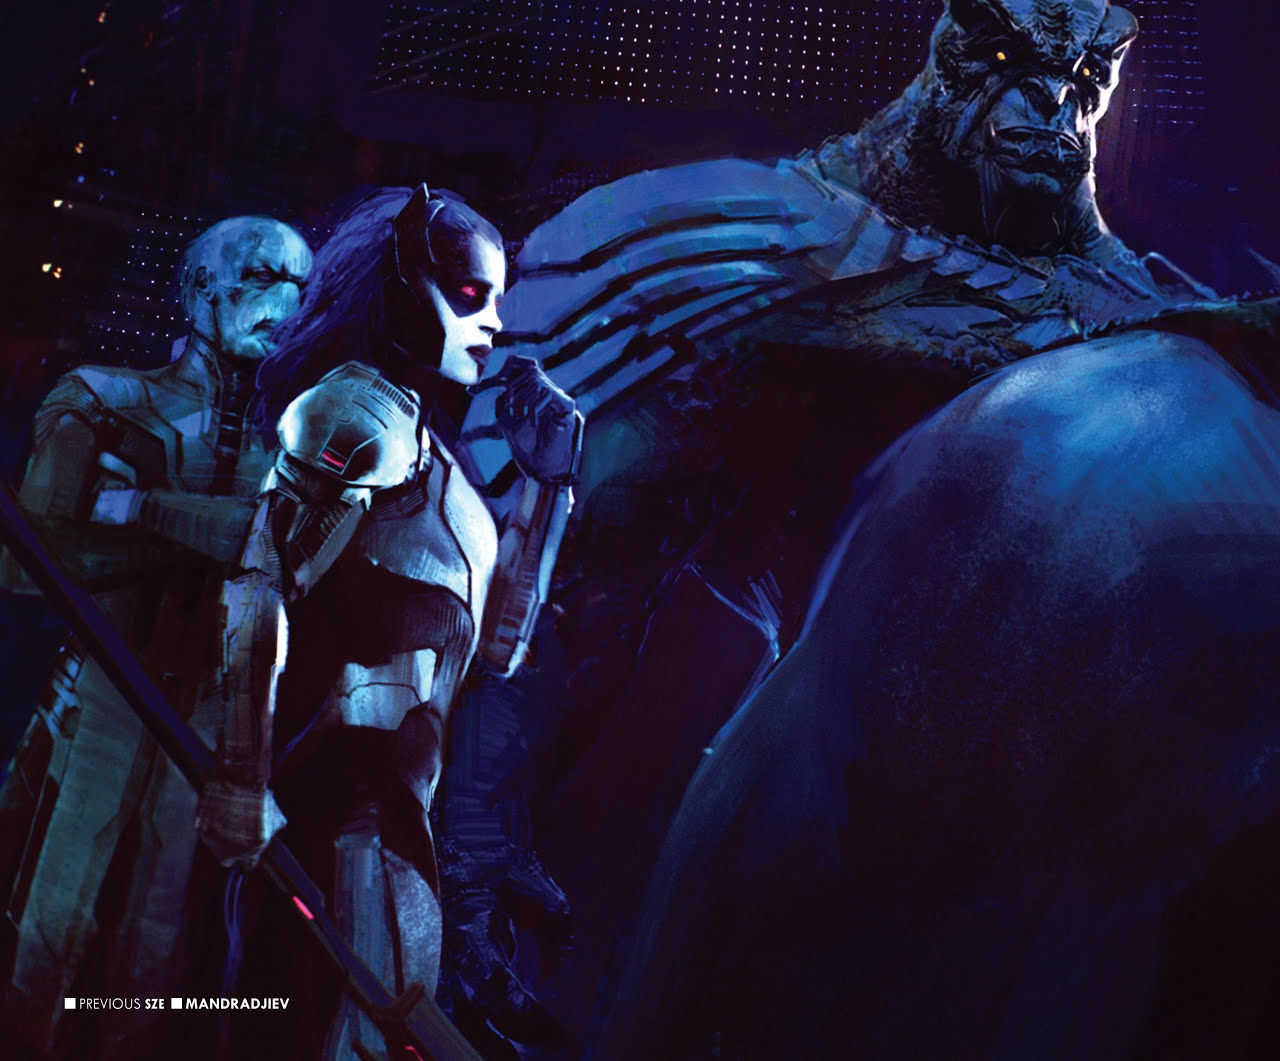 The Art of Marvel's Avengers Infinity War 4